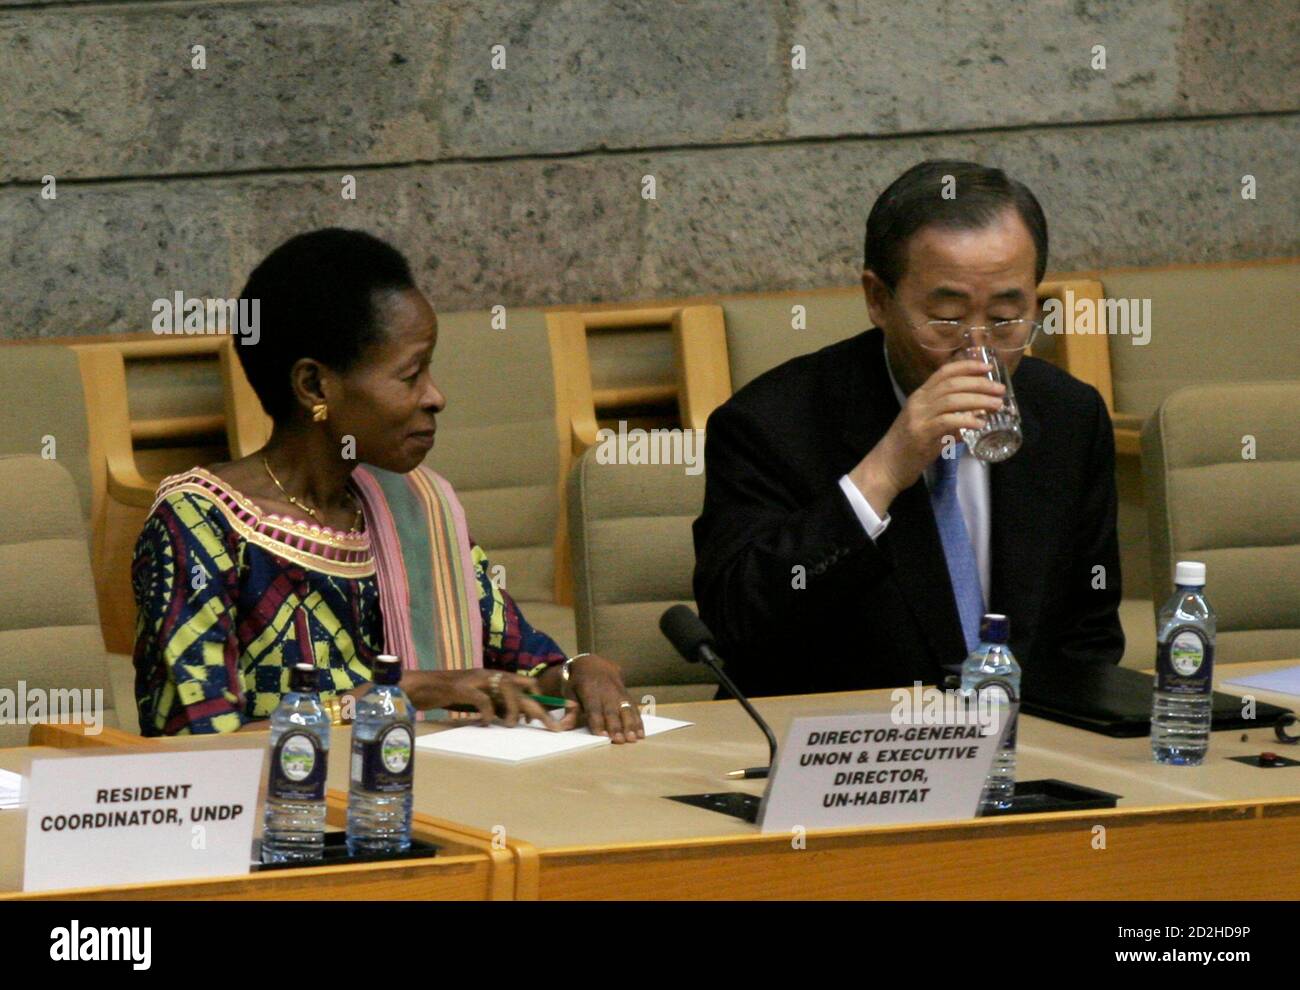 UN-Generalsekretär Ban Ki-Moon (R) nimmt einen Drink, während die Exekutivdirektorin des UN-Programms für menschliche Siedlungen, Anna Tibaijuka, bei einem Treffen mit UN-Mitarbeitern im Gigiri-Büro in Nairobi am 31. Januar 2007 zuschaut. REUTERS/Thomas Mukoya (KENIA) Stockfoto